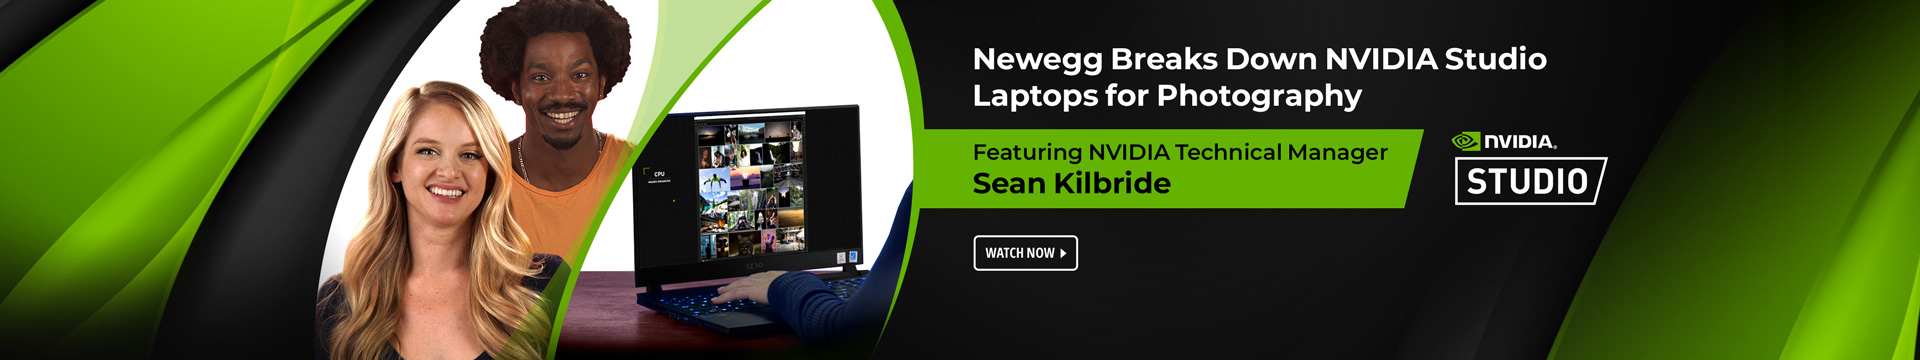 Newegg breaks down NVDIA studio laptops for photography